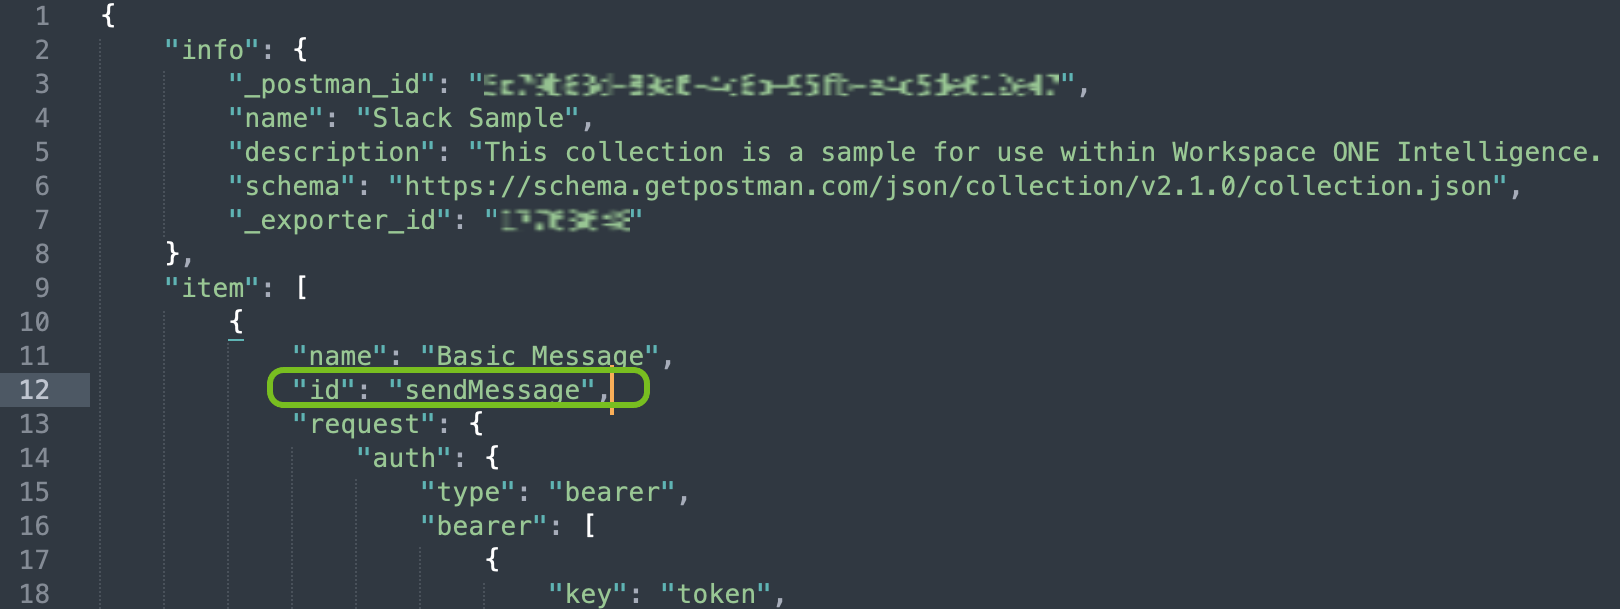 Dieser JSON-Datei wurde eine neue Zeile mit der eindeutigen ID hinzugefügt, und die ID wird direkt hinter dem Aktionsnamen hinzugefügt.